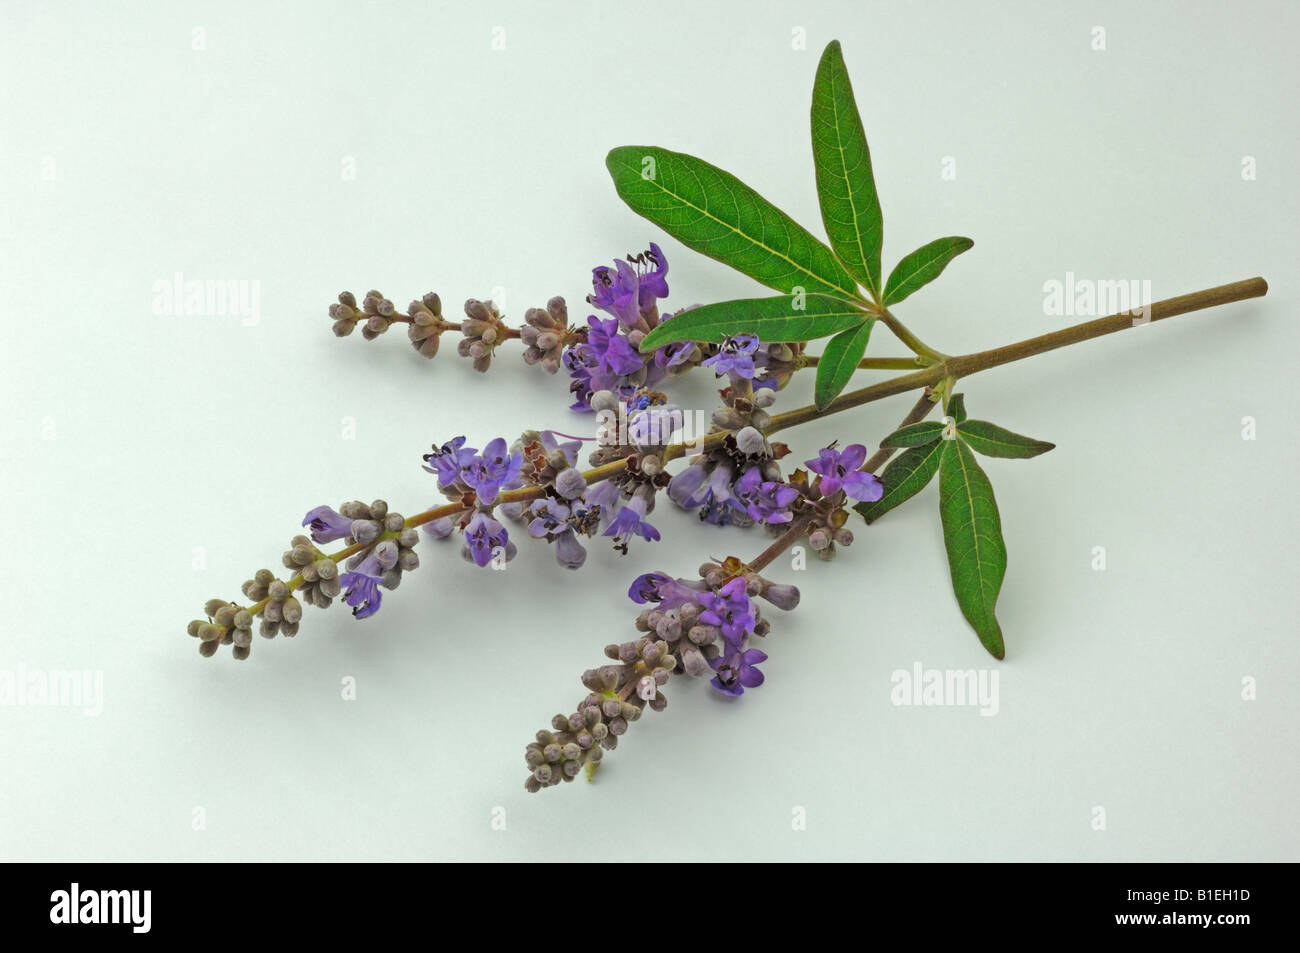 Mediterranean Chaste Tree (Vitex agnus-castus), flowering twig, studio picture Stock Photo